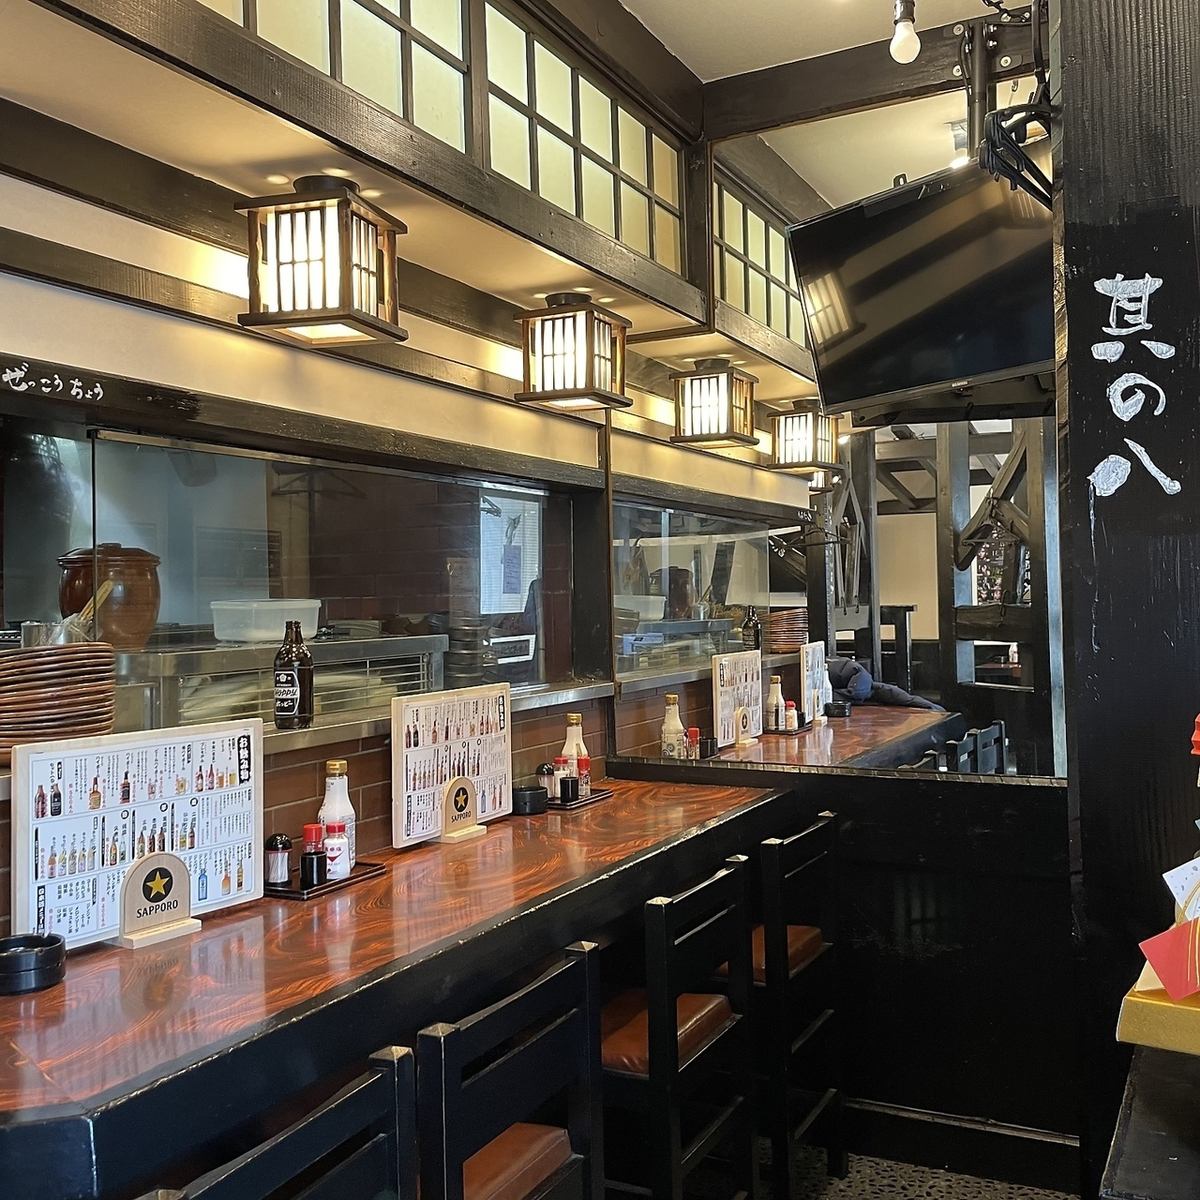 能以合理的價格享受我們引以為豪的手工日本料理的餐廳！